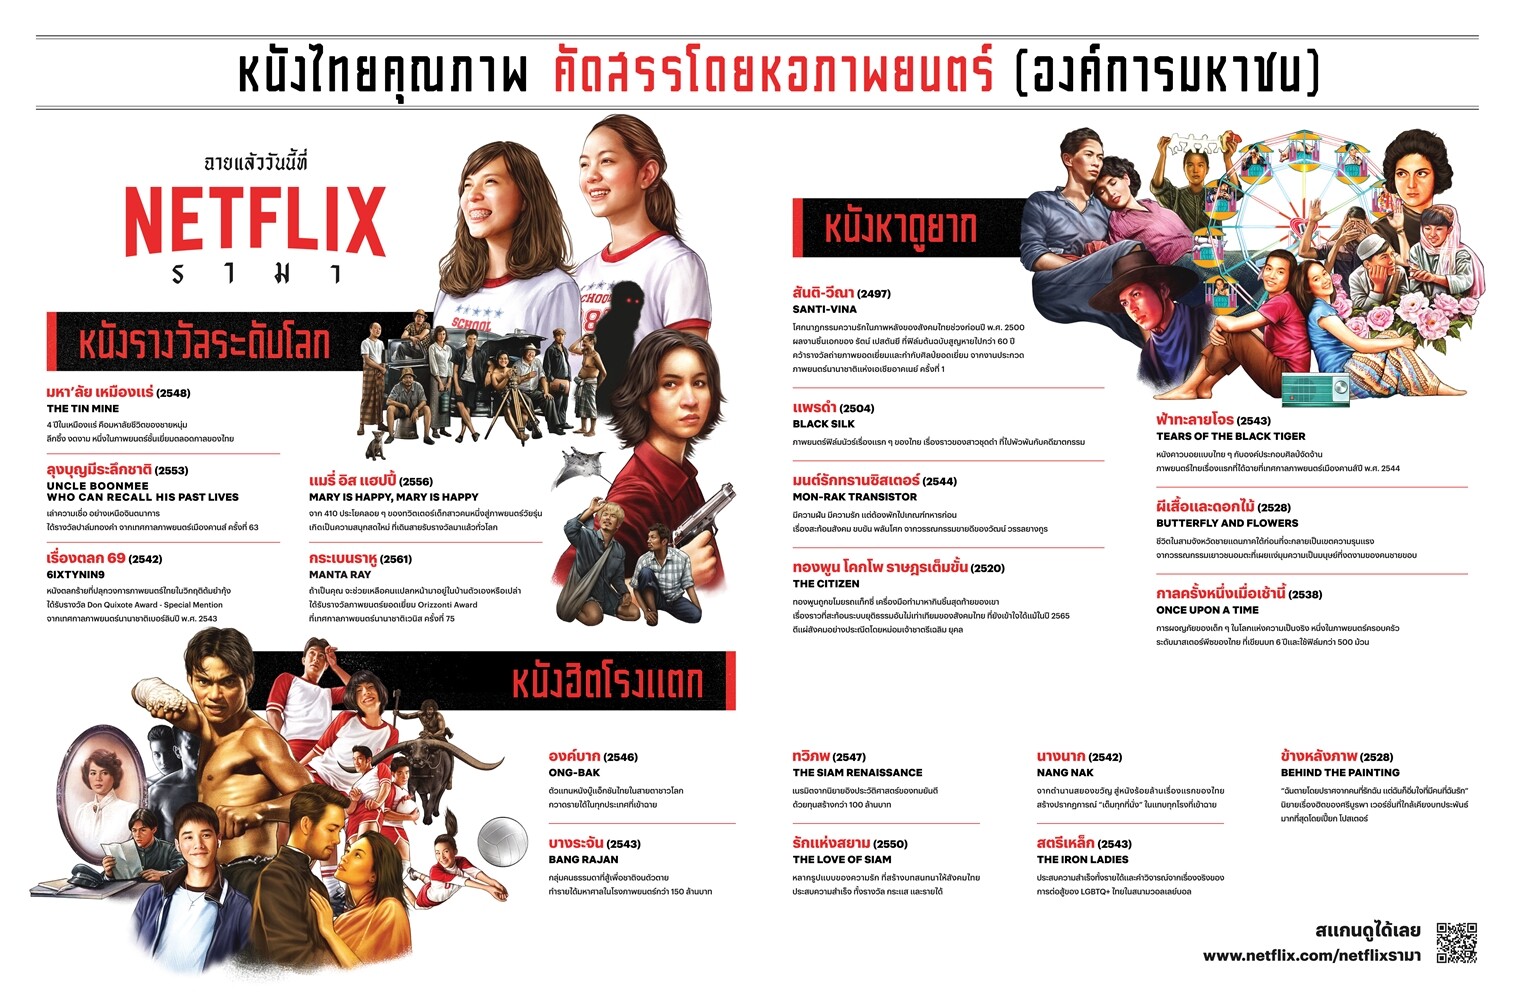 ยิ่งใหญ่ต้อนรับสงกรานต์! Netflix จับมือ หอภาพยนตร์ คืนชีพหนังไทยในตำนาน ดูได้แล้ววันนี้ทั่วไทย